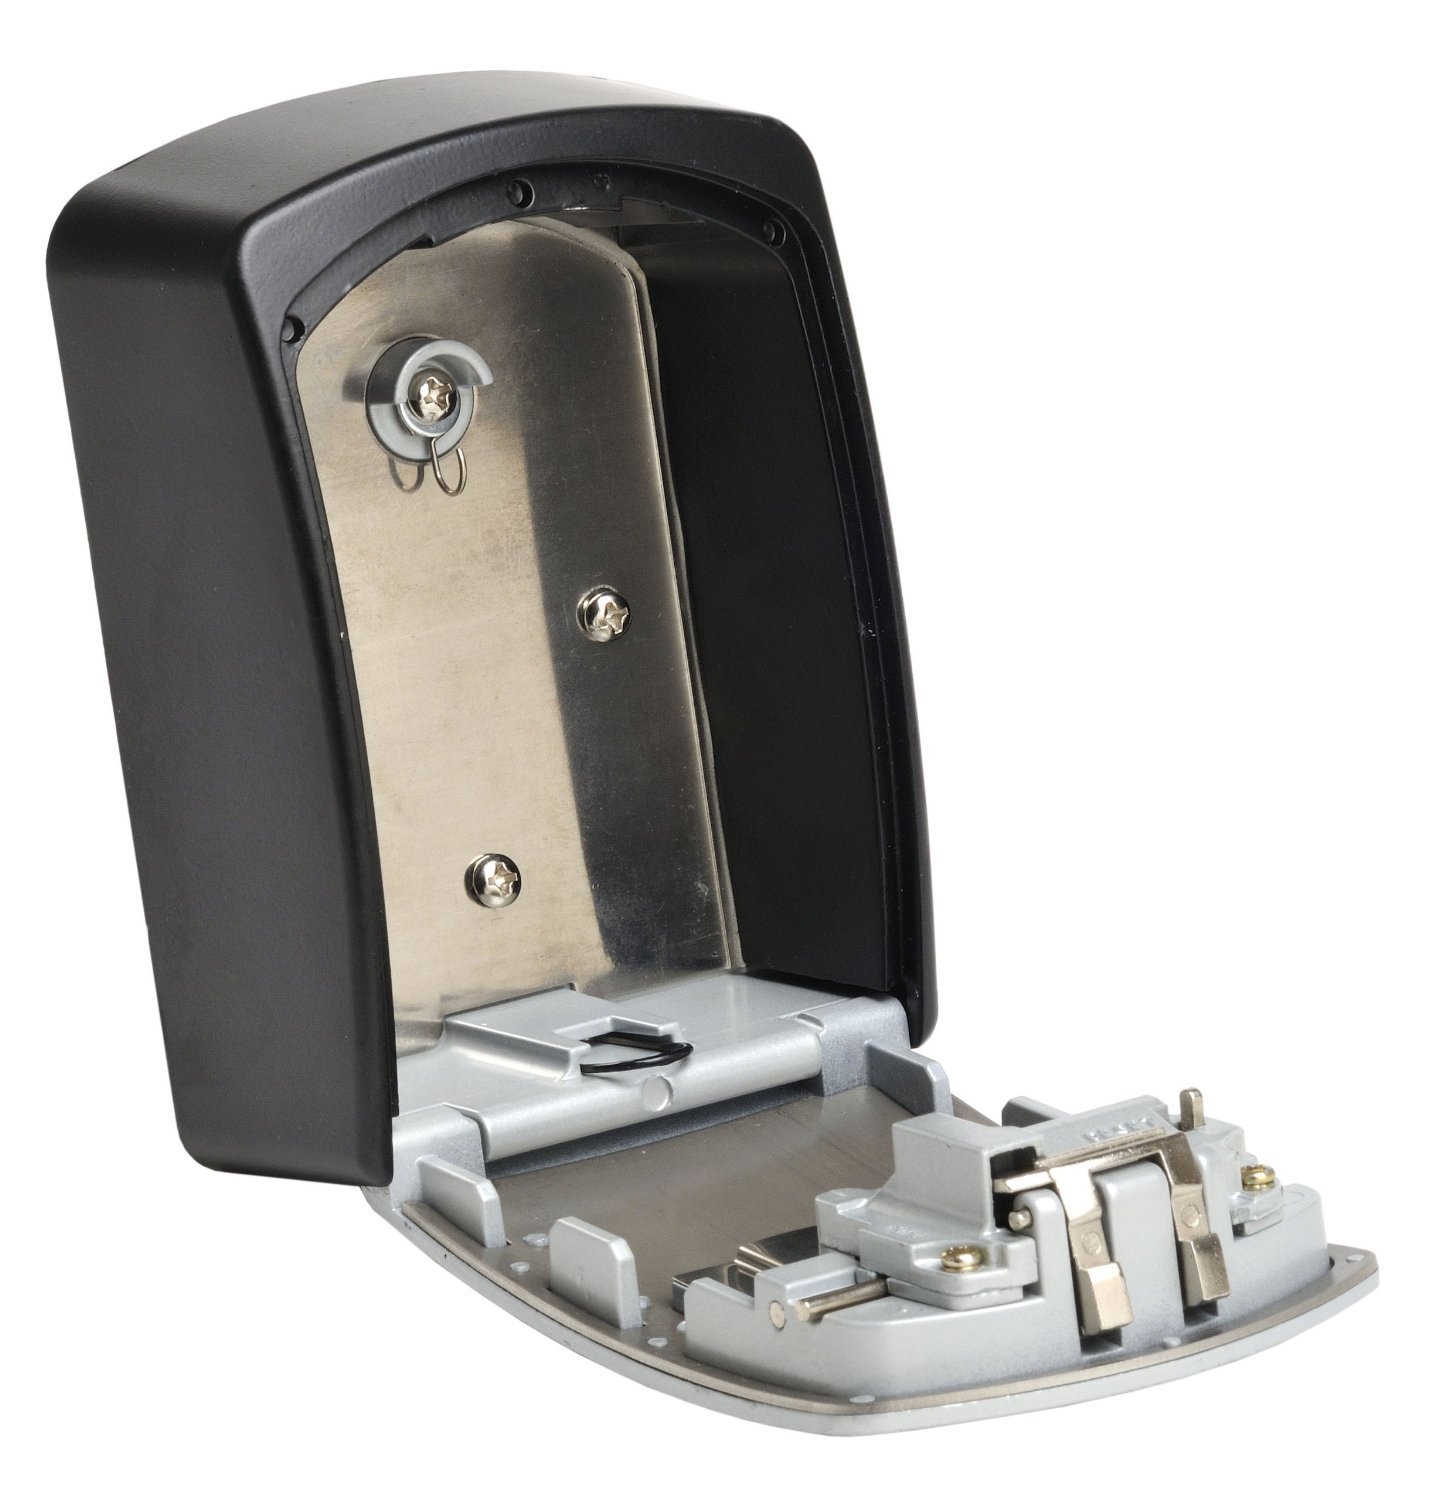 Cutie de chei MasterLock XL cu încuietoare cu combinație (5403EURD)